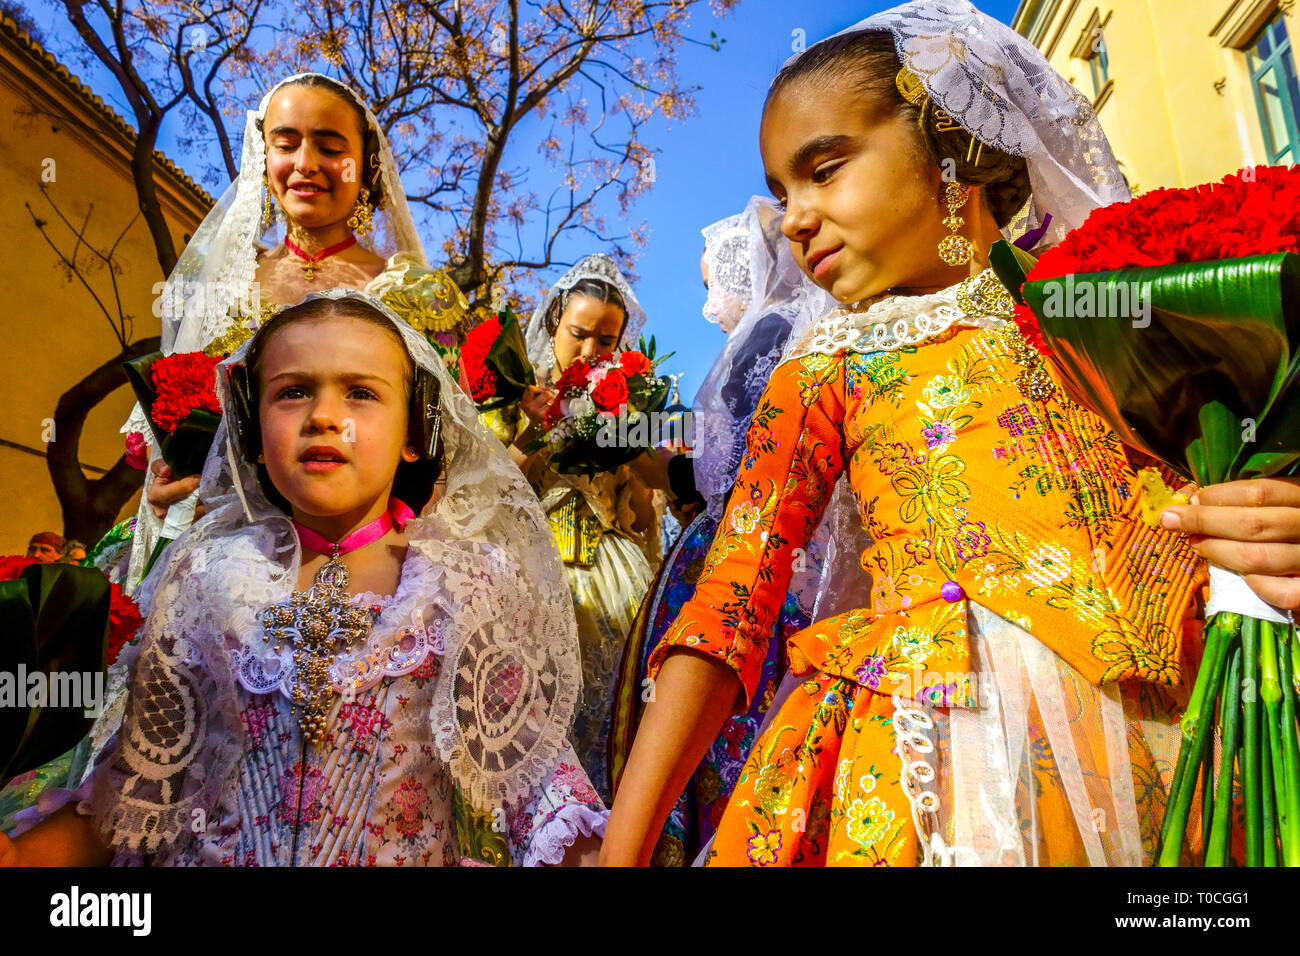 Festival des Fallas de Valence, enfants, enfants en robe traditionnelle, défilé à la Vierge Marie avec des fleurs, Las Fallas Valencia Espagne filles Banque D'Images